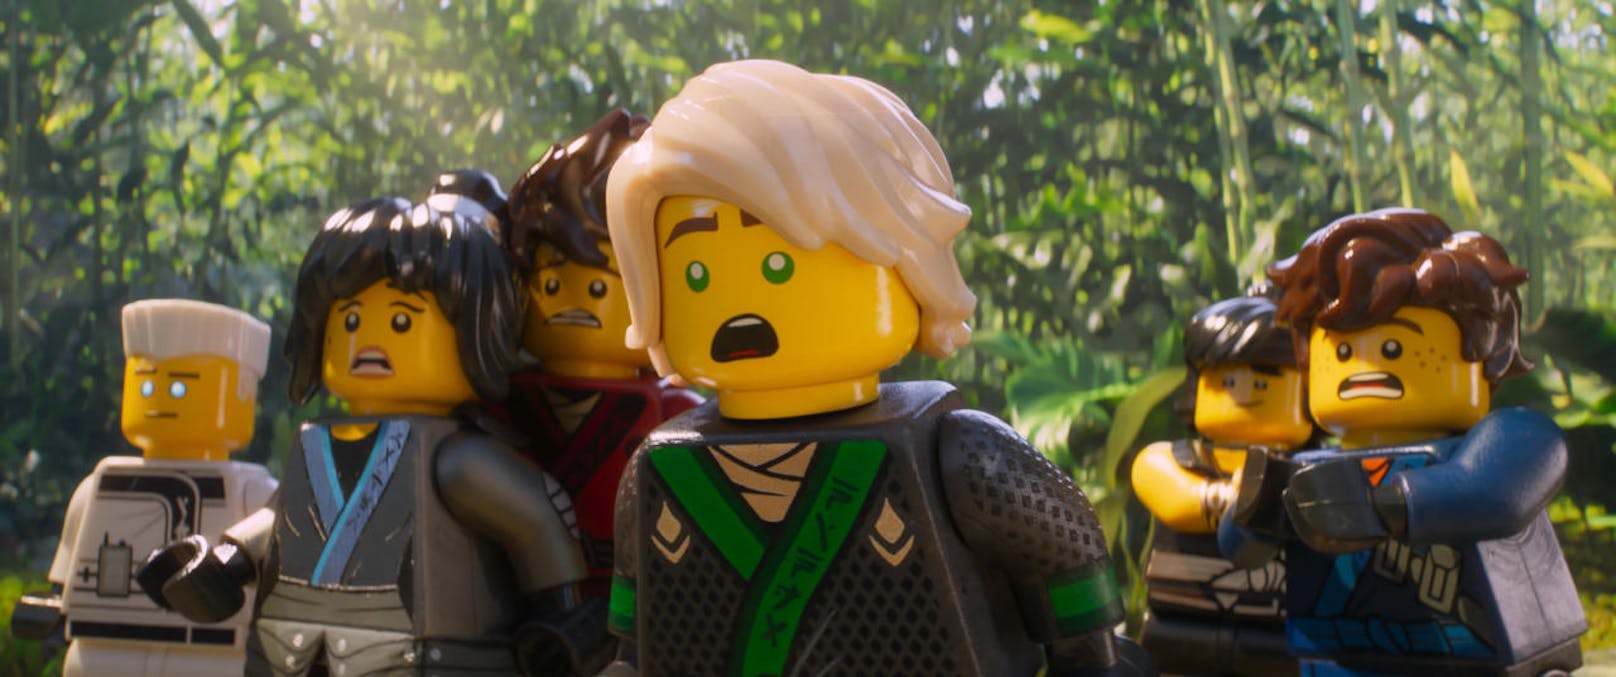 "The LEGO Ninjago Movie"